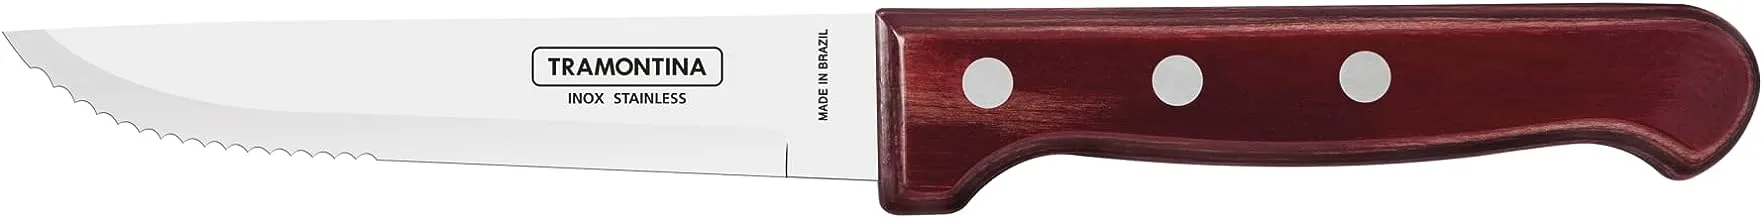 سكين شريحة لحم ترامونتينا جامبو مقاس 5 بوصات مع شفرة من الفولاذ المقاوم للصدأ ومقبض آمن للاستخدام في غسالة الأطباق من خشب البوليوود الأحمر المعالج